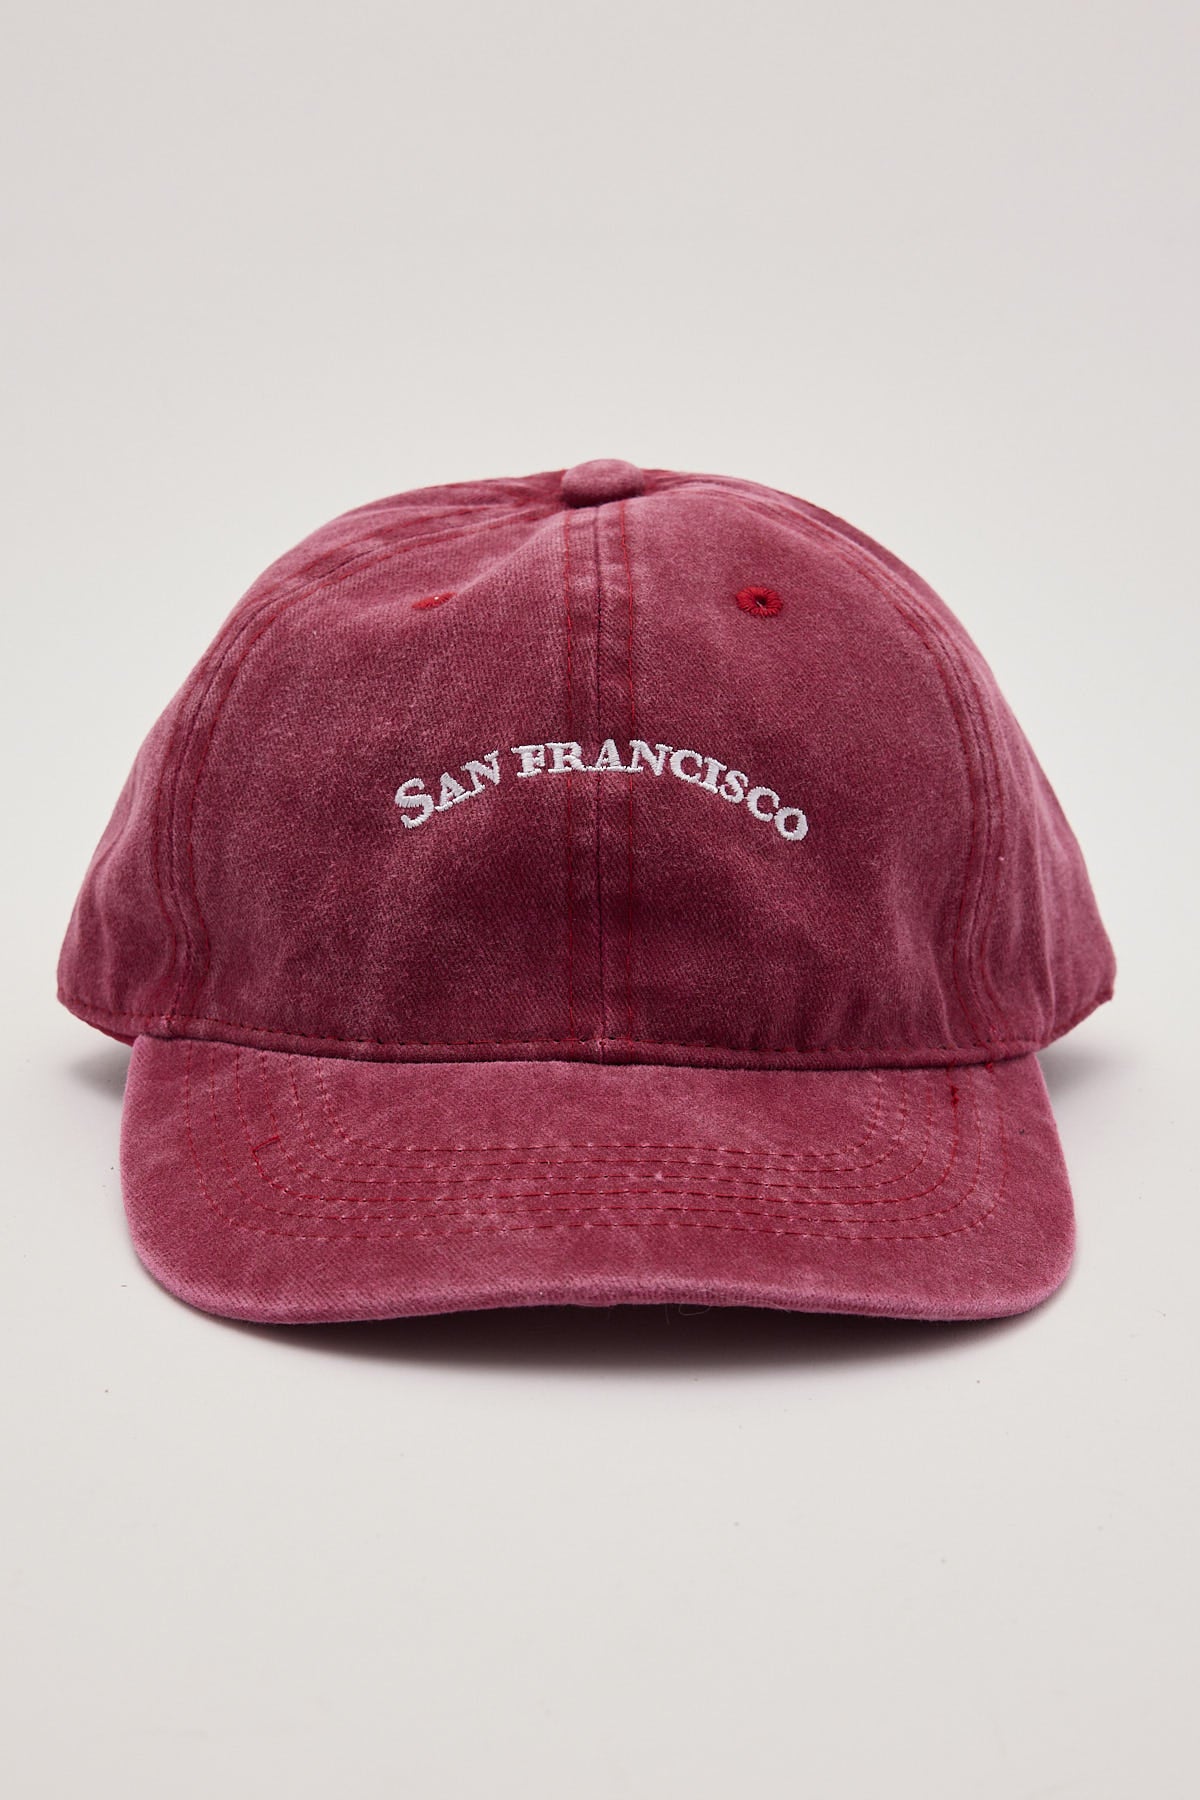 Token San Francisco Cap Red